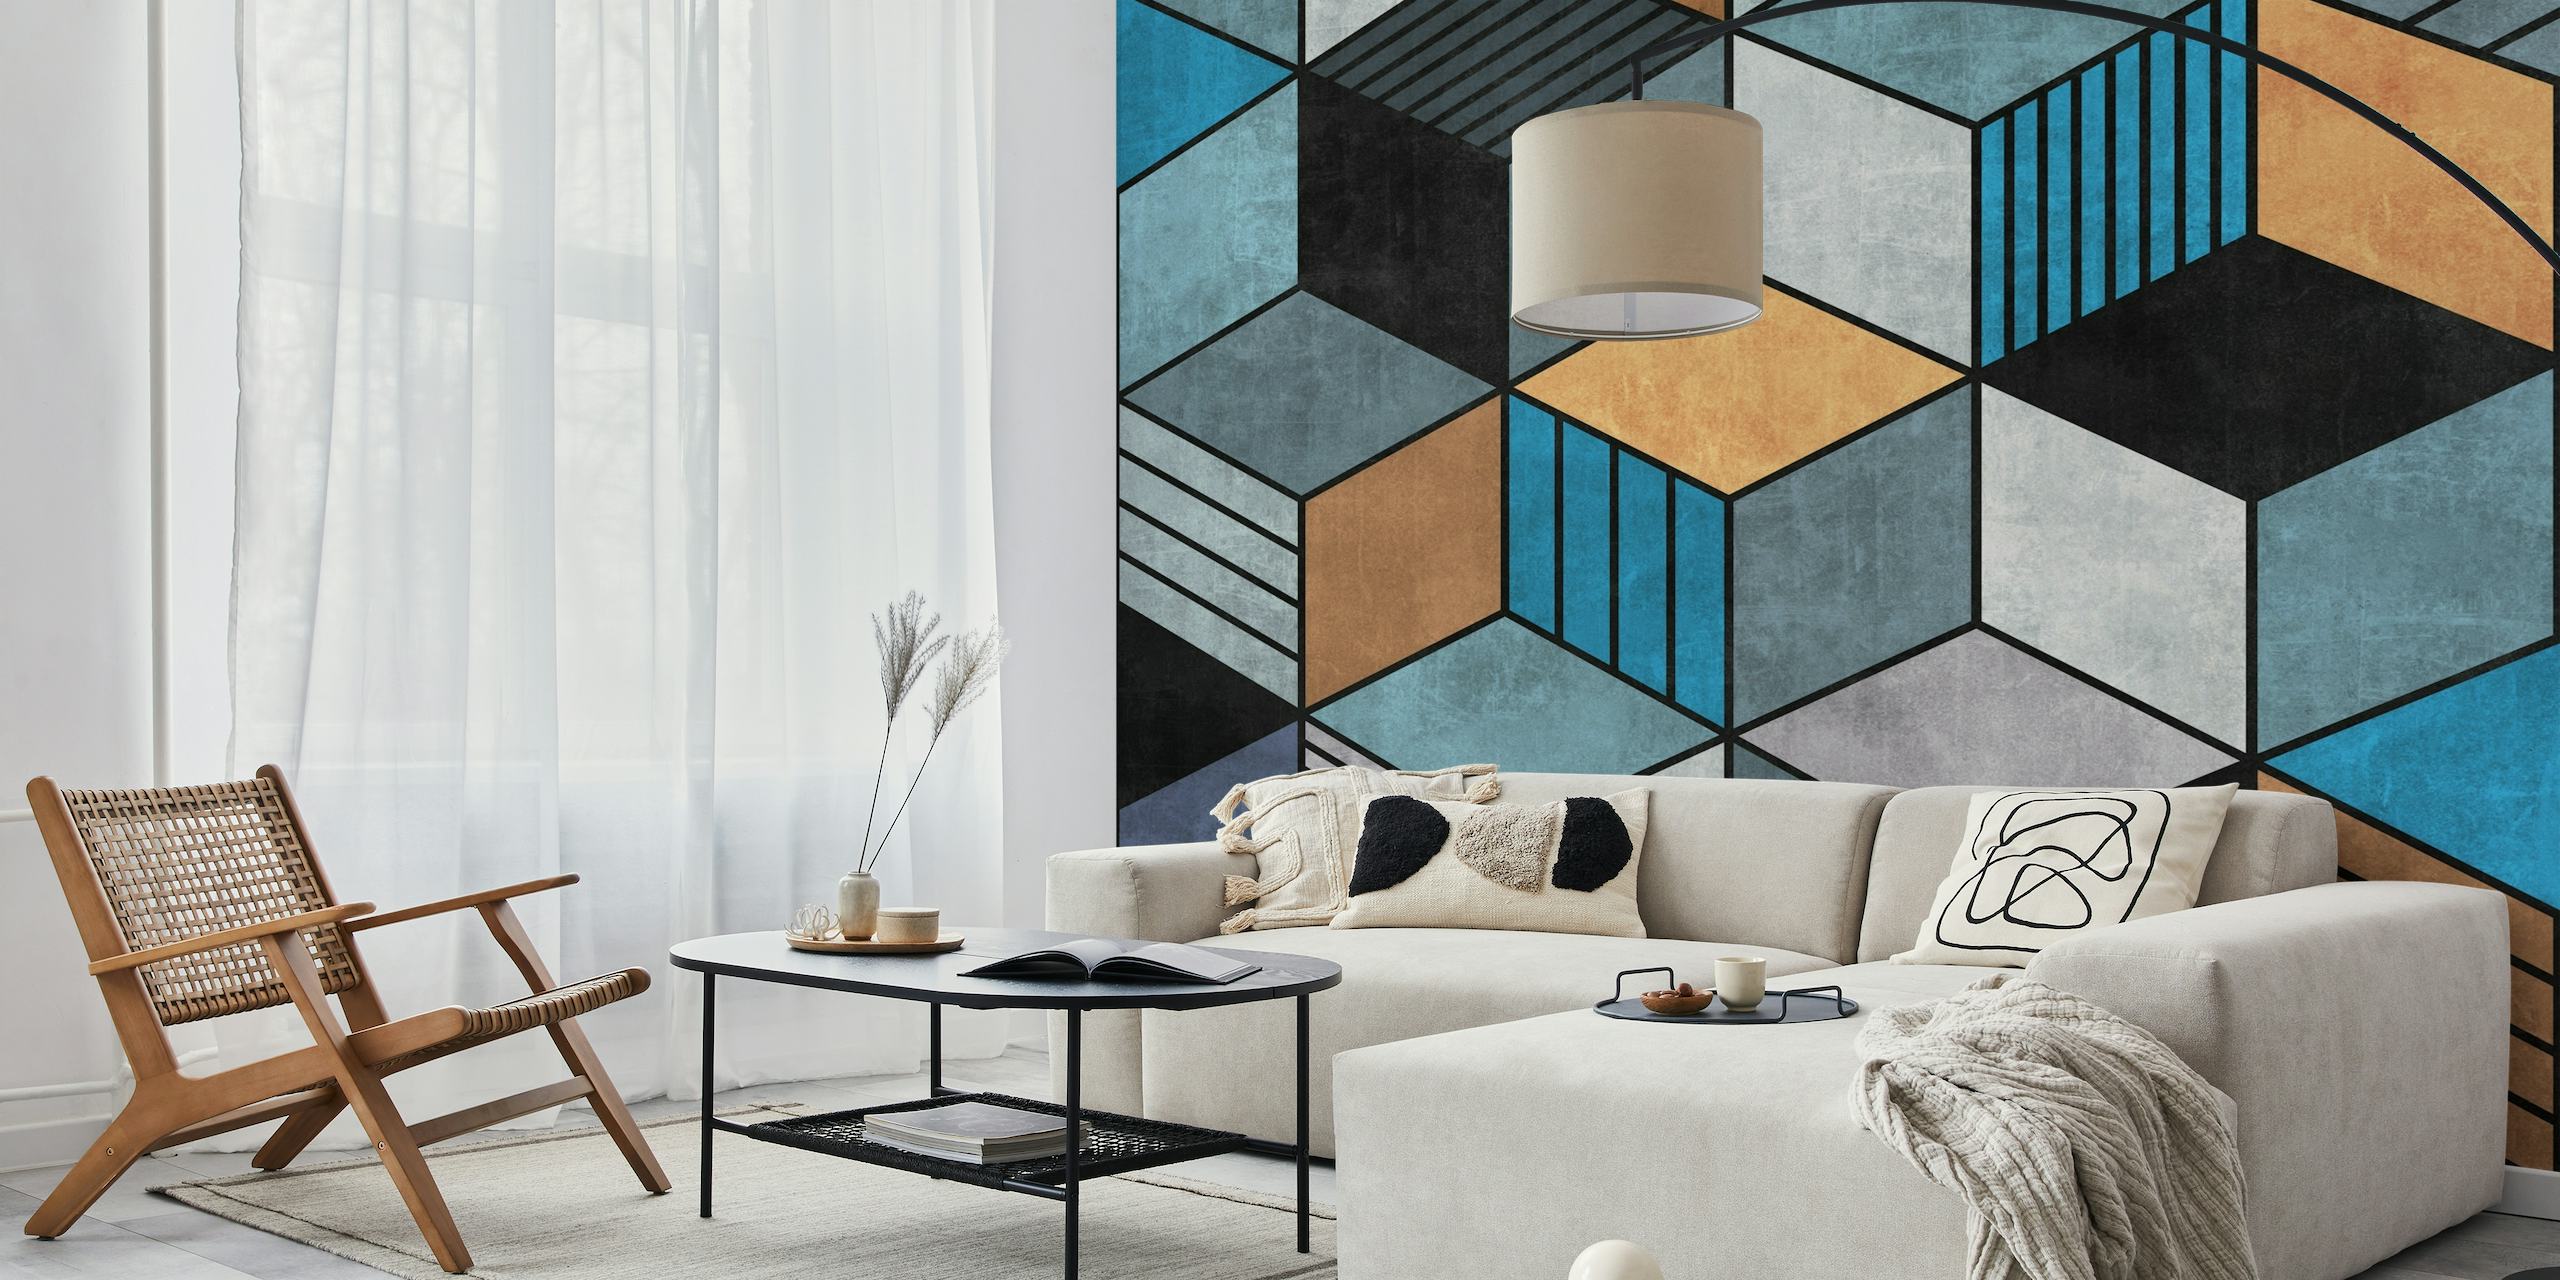 Abstract geometrisch fotobehang met kleurrijke kubussen in blauw-, zwart- en aardetinten die een 3D-effect creëren